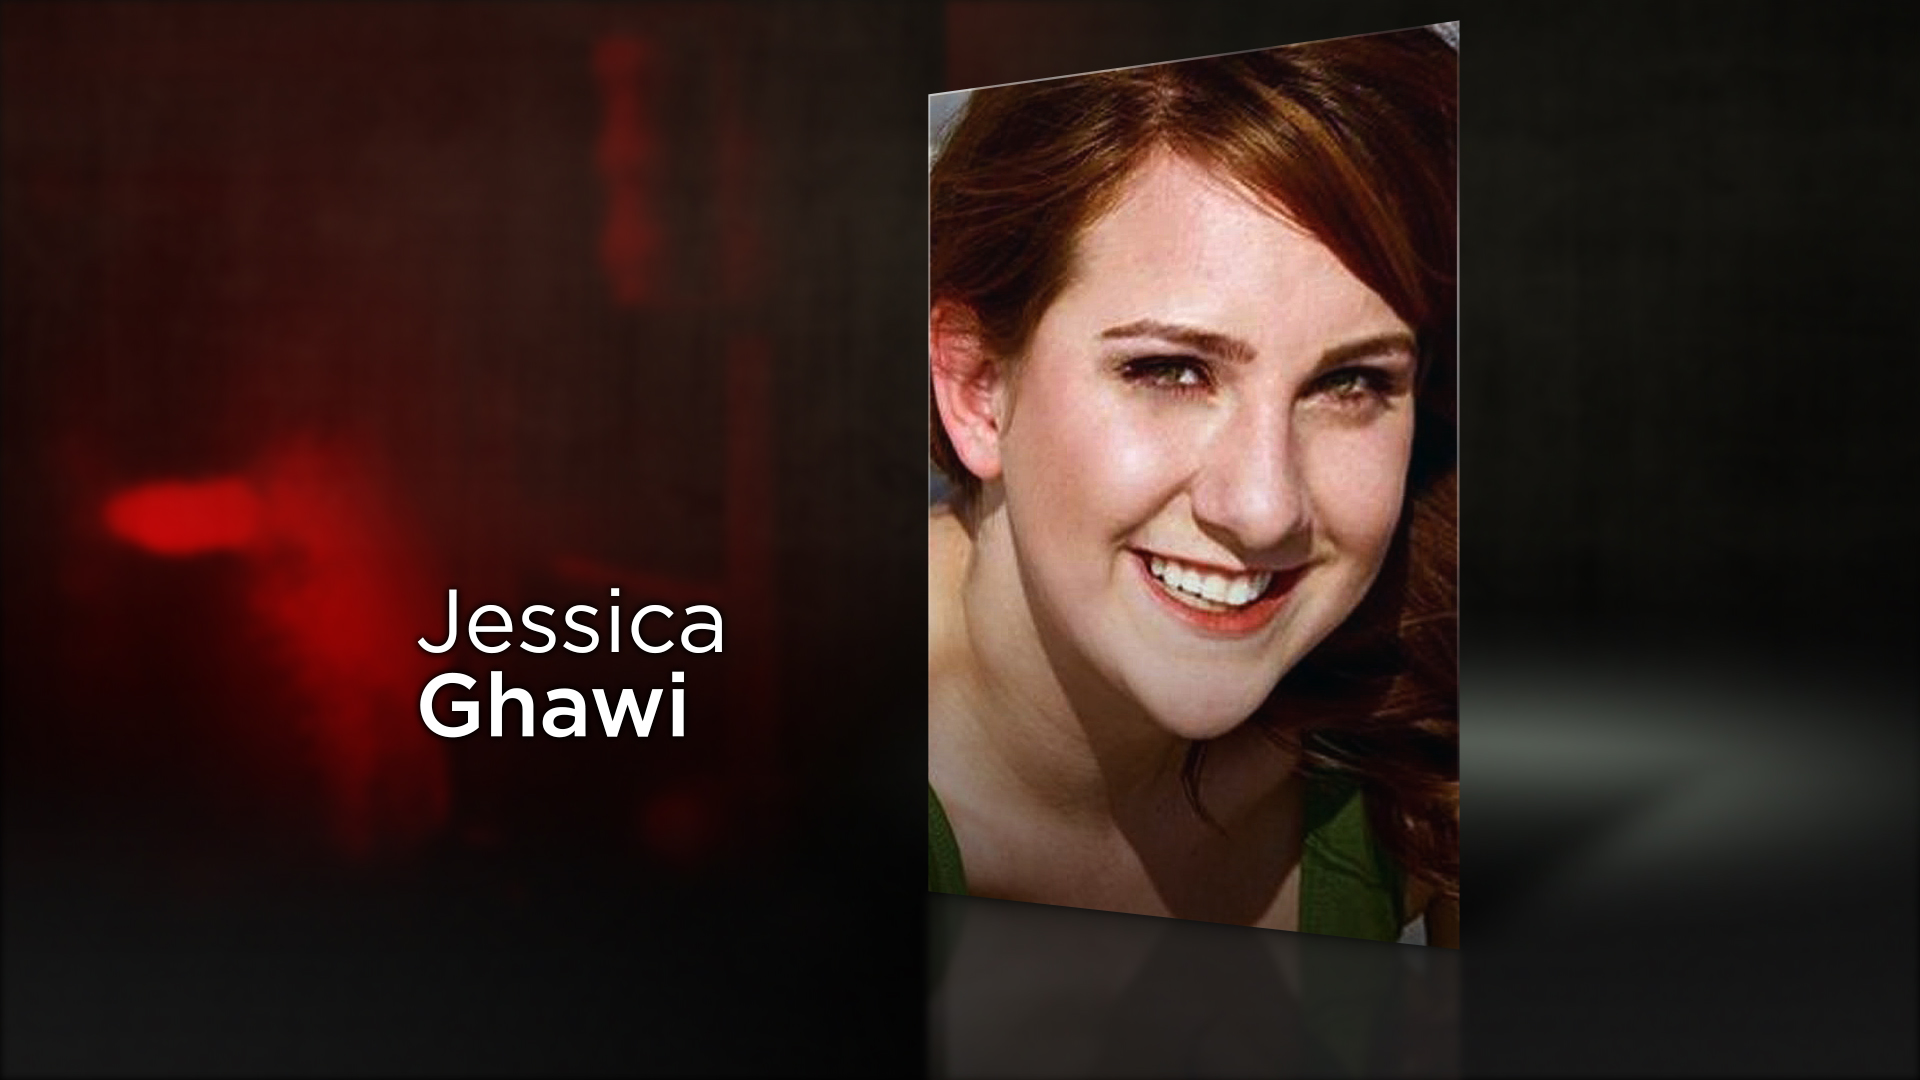 Jessica N. Ghawi, 24